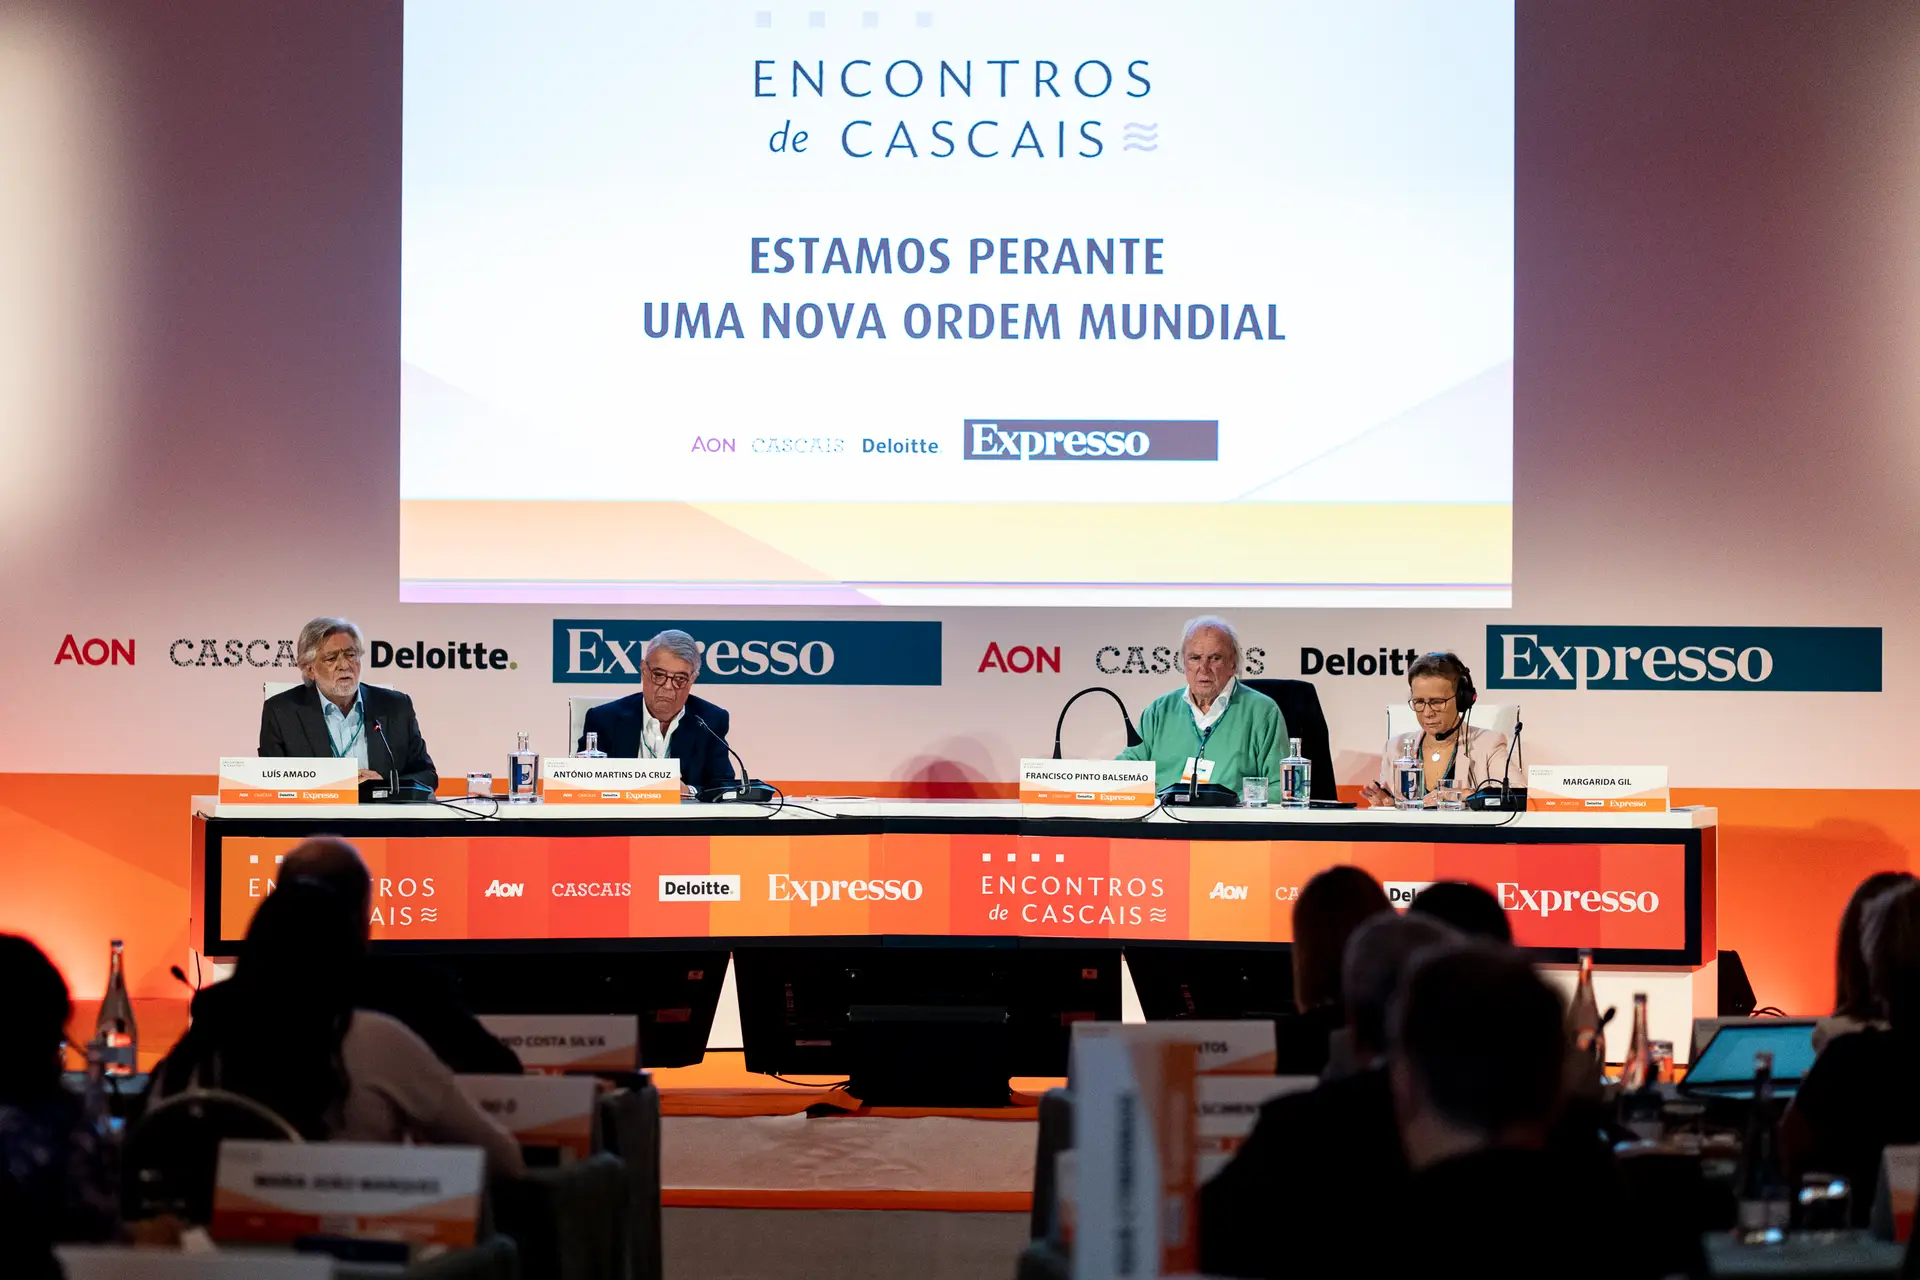 Um momento da sala, durante o primeiro painel de discussão, com a moderação de Francisco Pinto Balsemão, fundador do Expresso